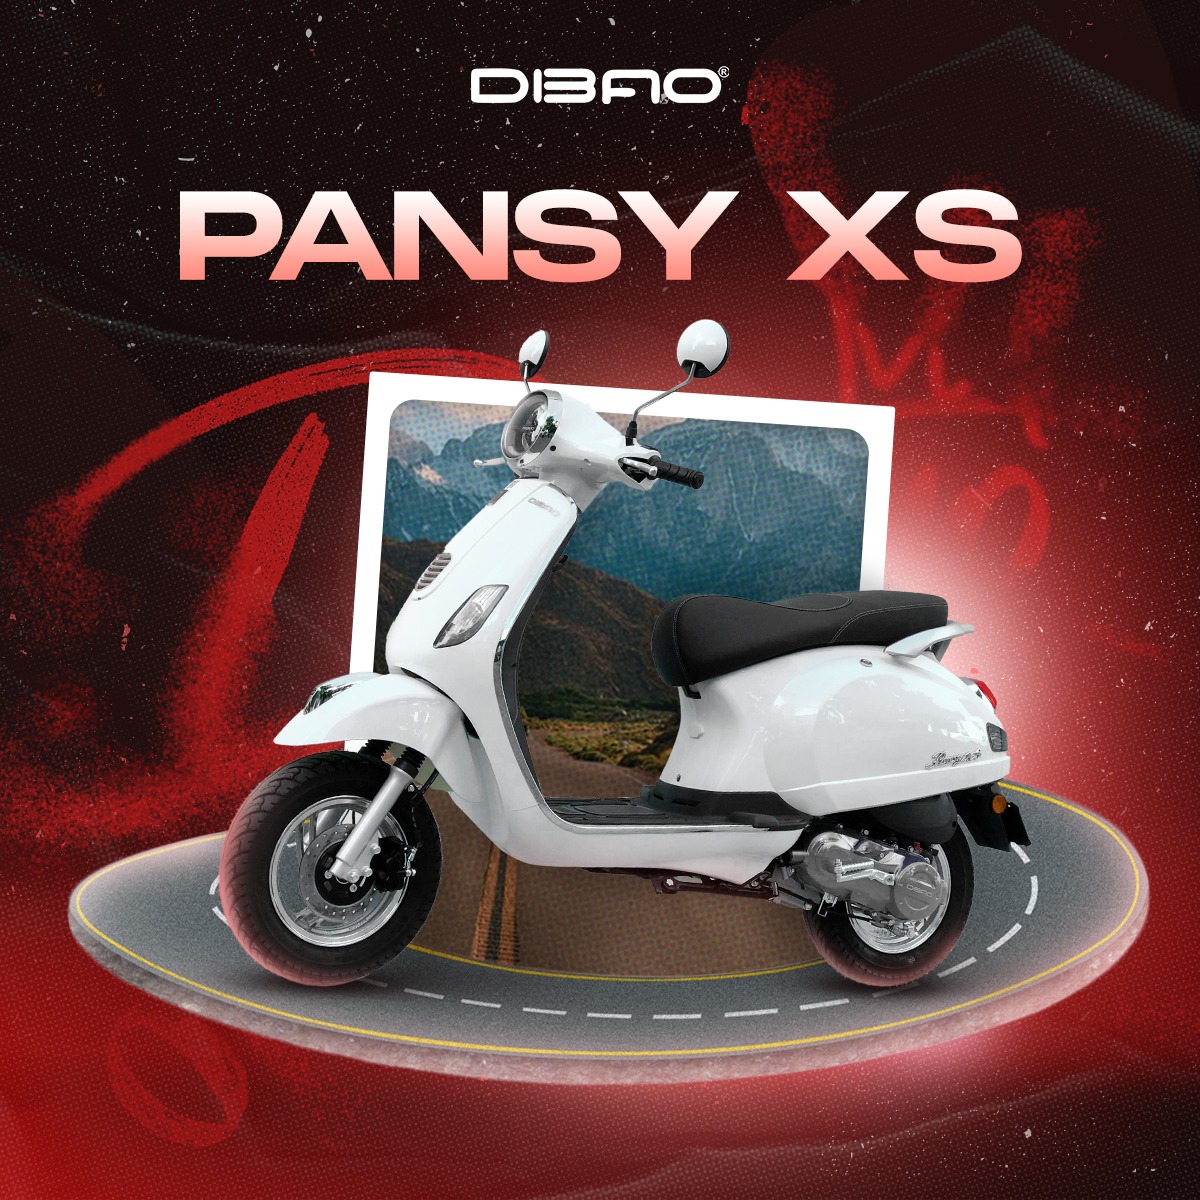 xe máy 50cc kiểu dáng vespa đời mới 2022 - Pansy XS